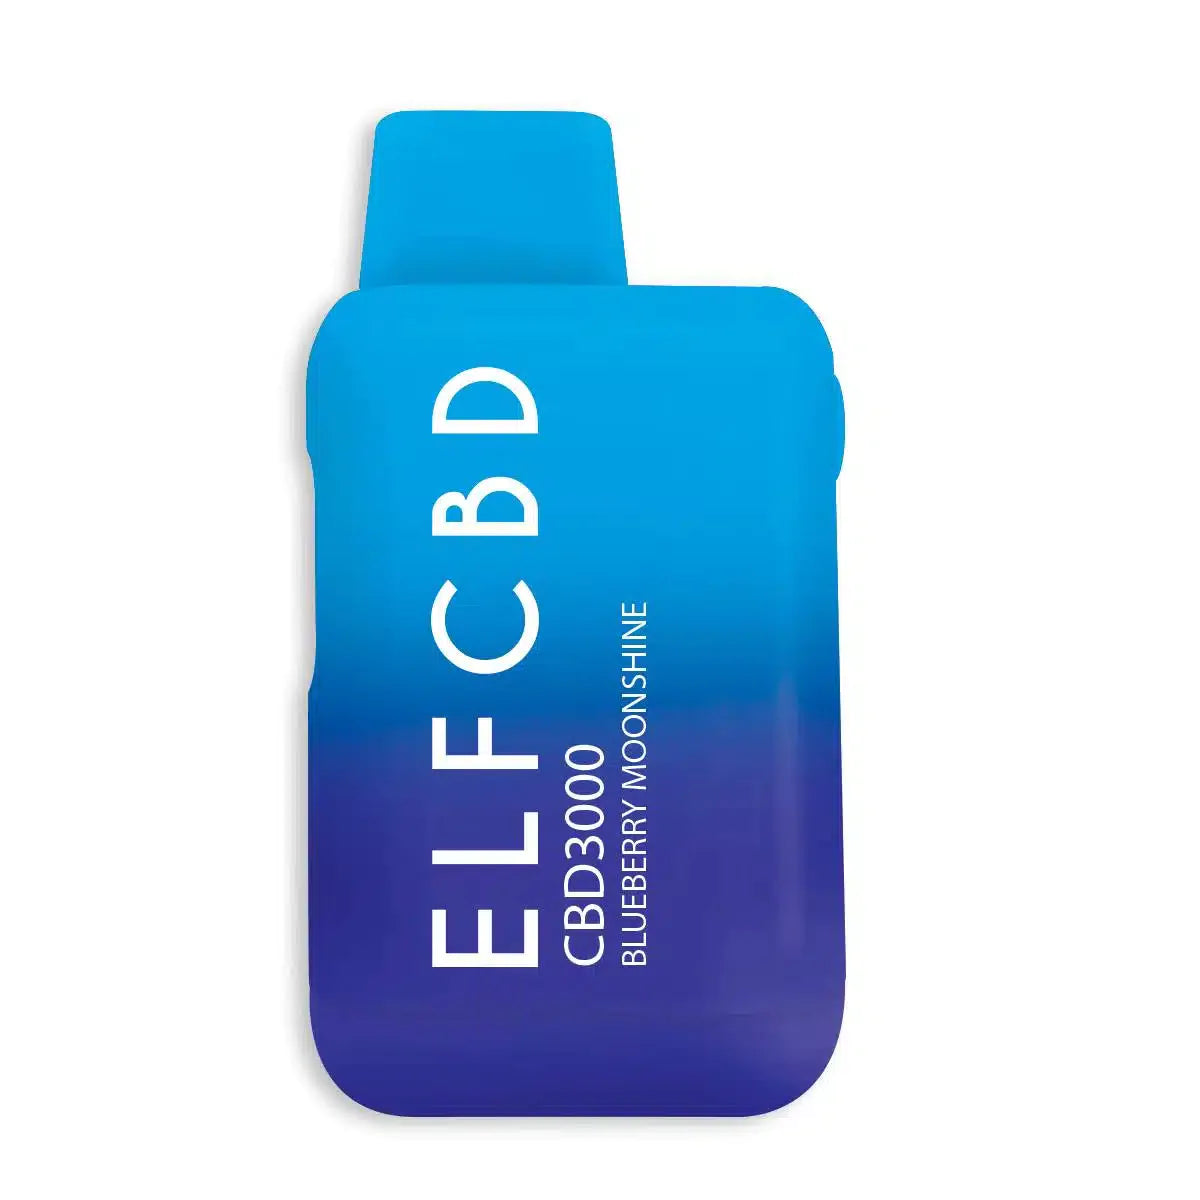 ELF THC CBD 3000 Premium Disposable Vapes 3.5g Best Price